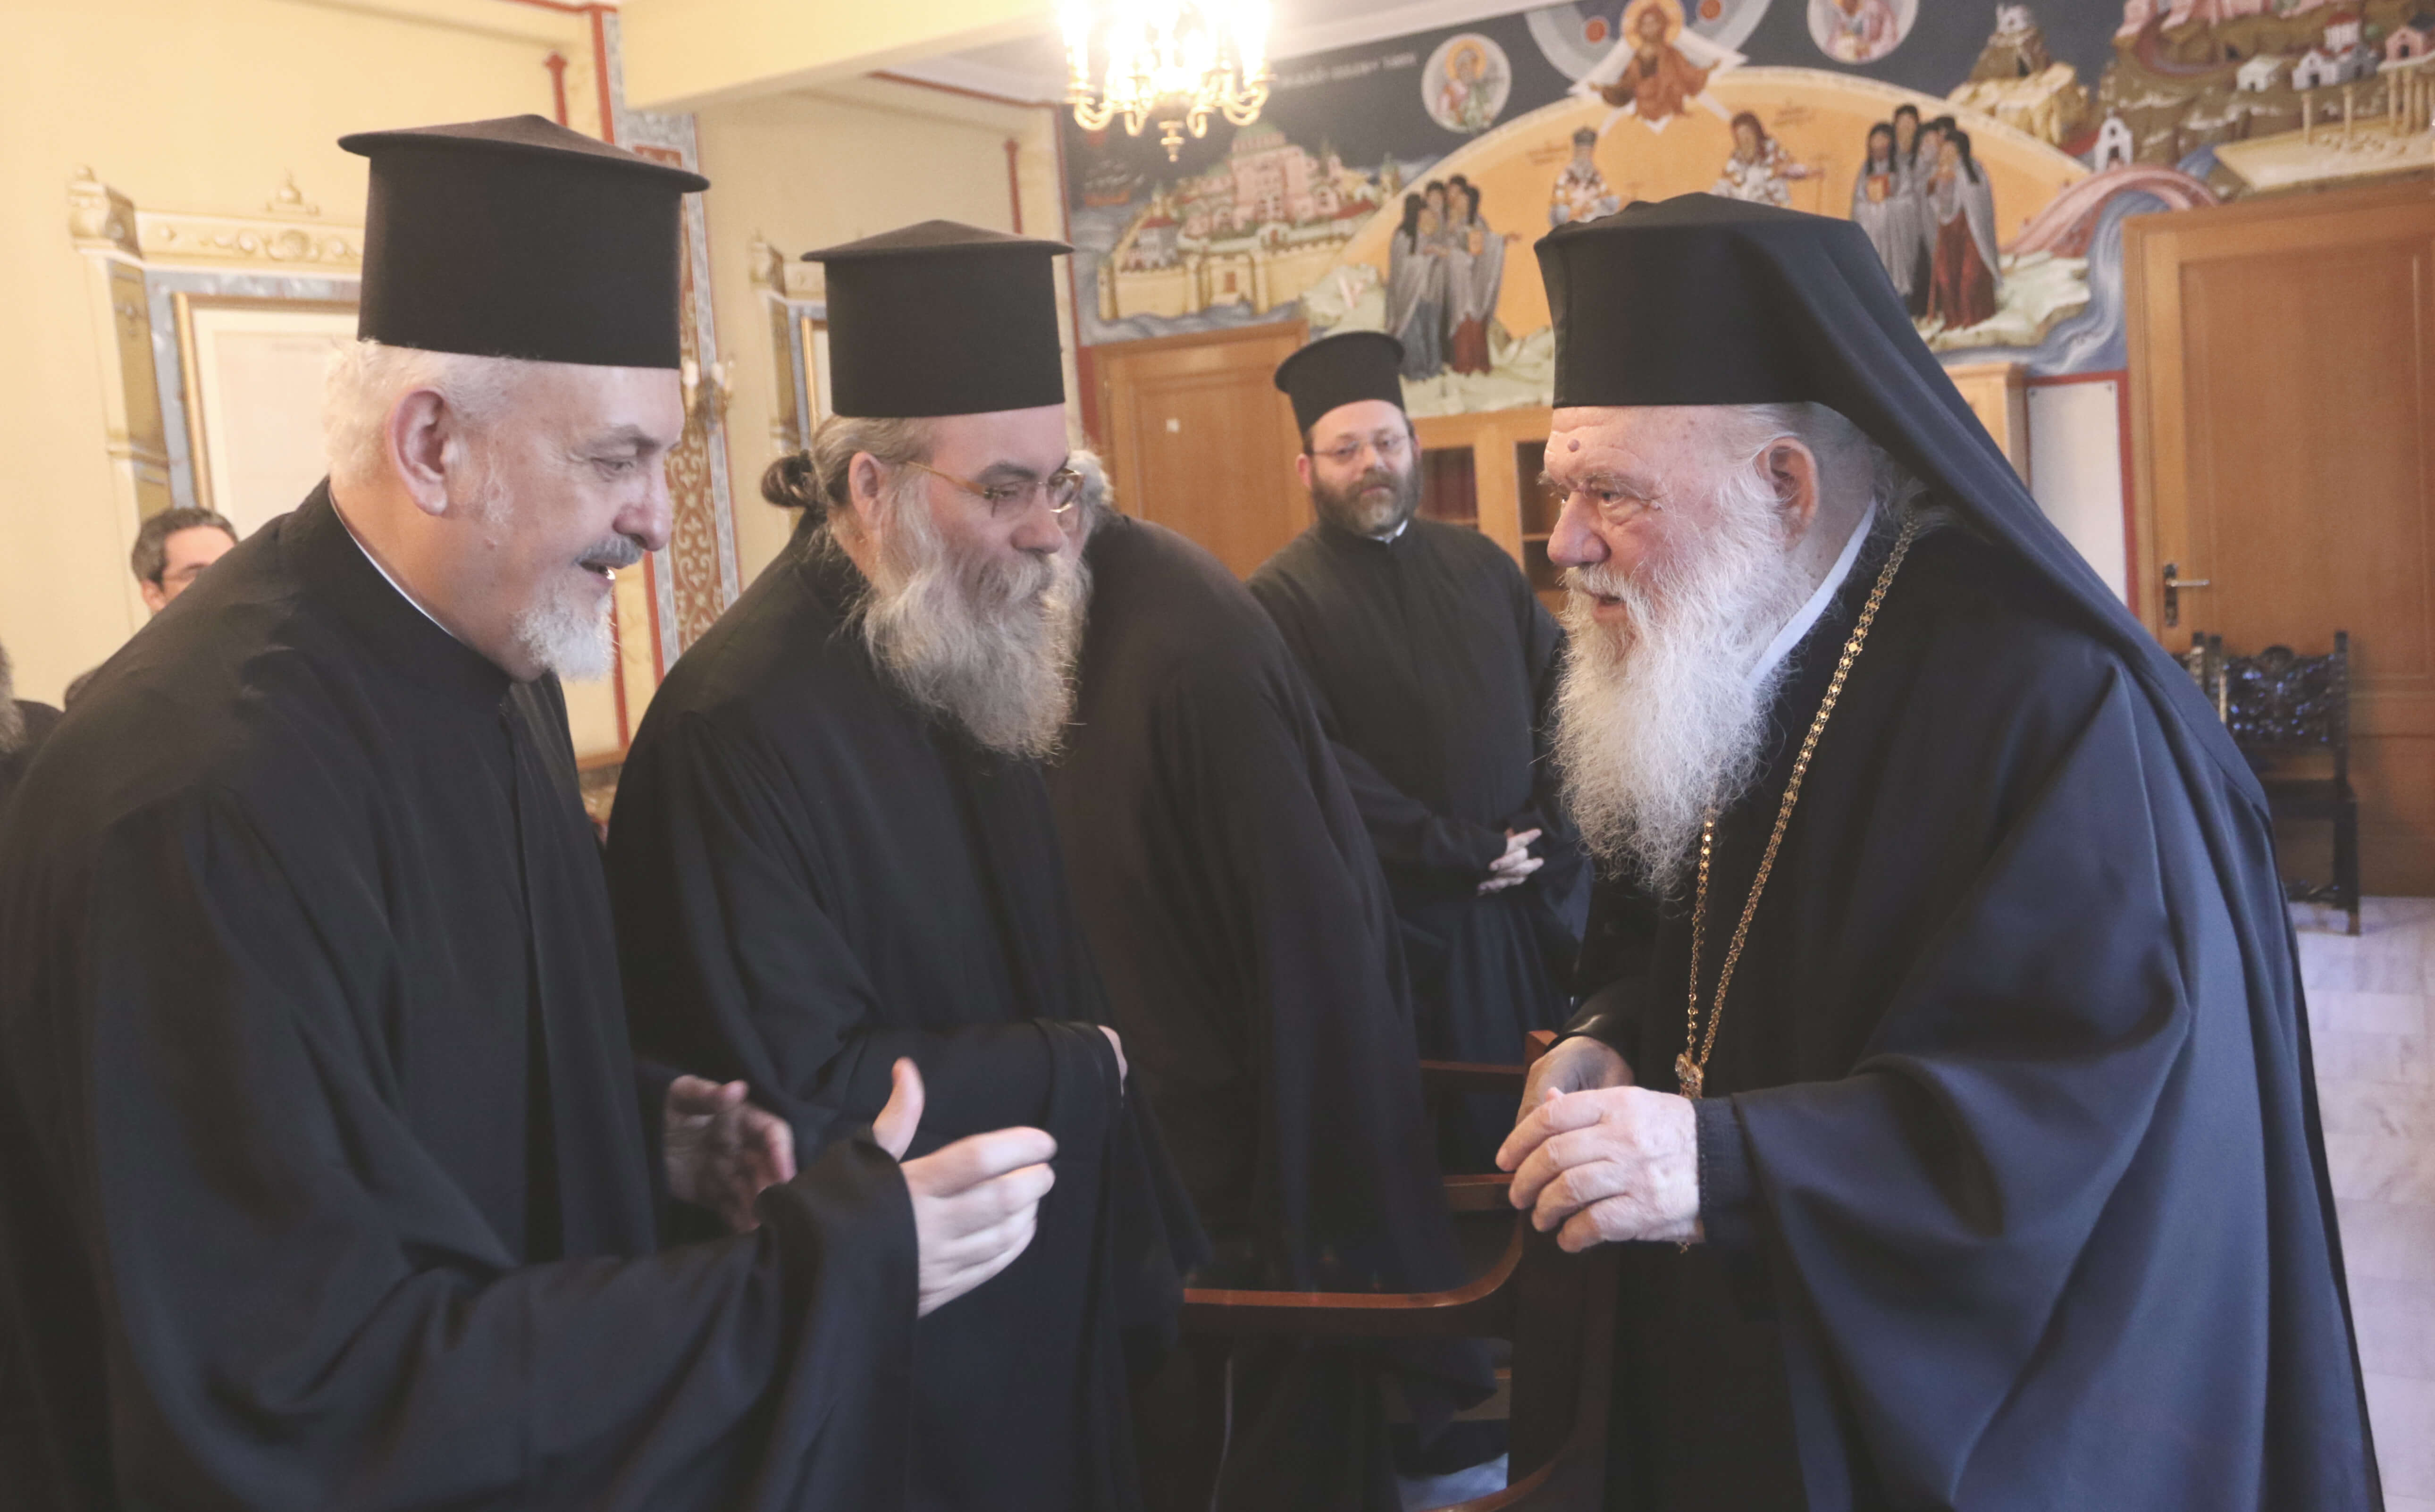 Πέρασε της Εκκλησίας! Στο δημόσιο οι ιερείς – Θα πληρώνονται από το Ταμείο Μισθοδοσίας της Εκκλησίας της Ελλάδος